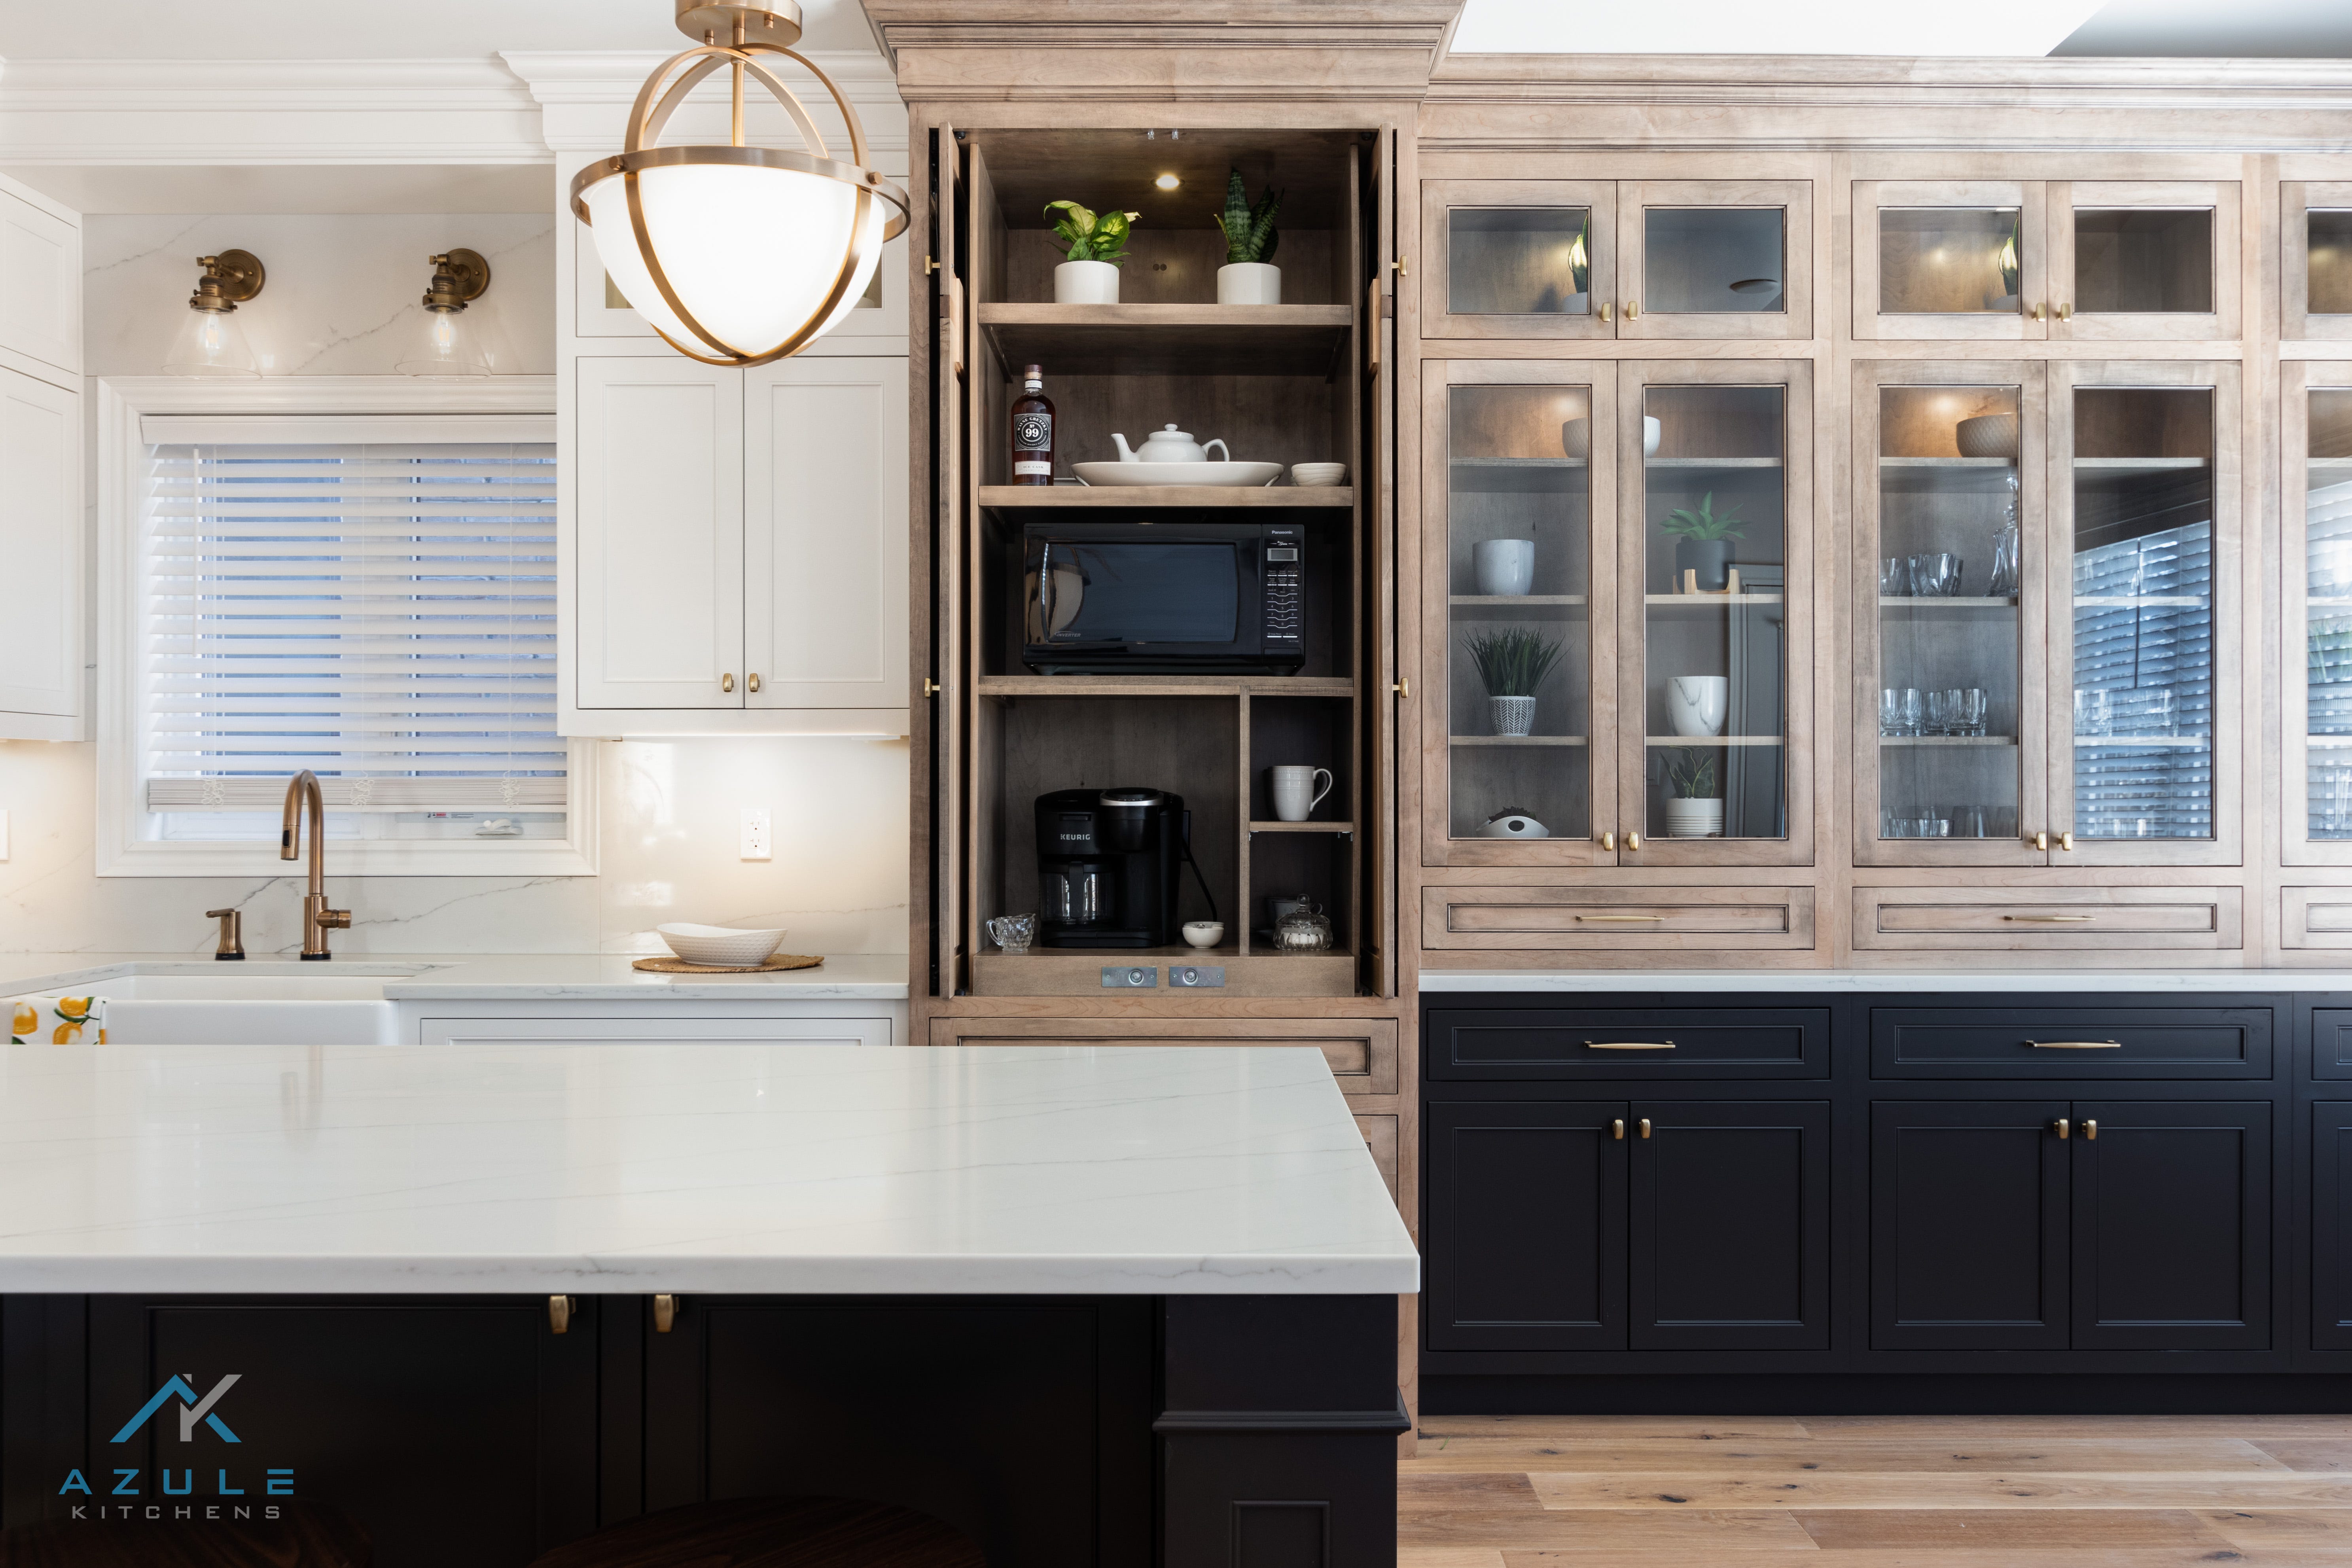 Azule Kitchens Refresh Your Kitchen Design With Kitchen